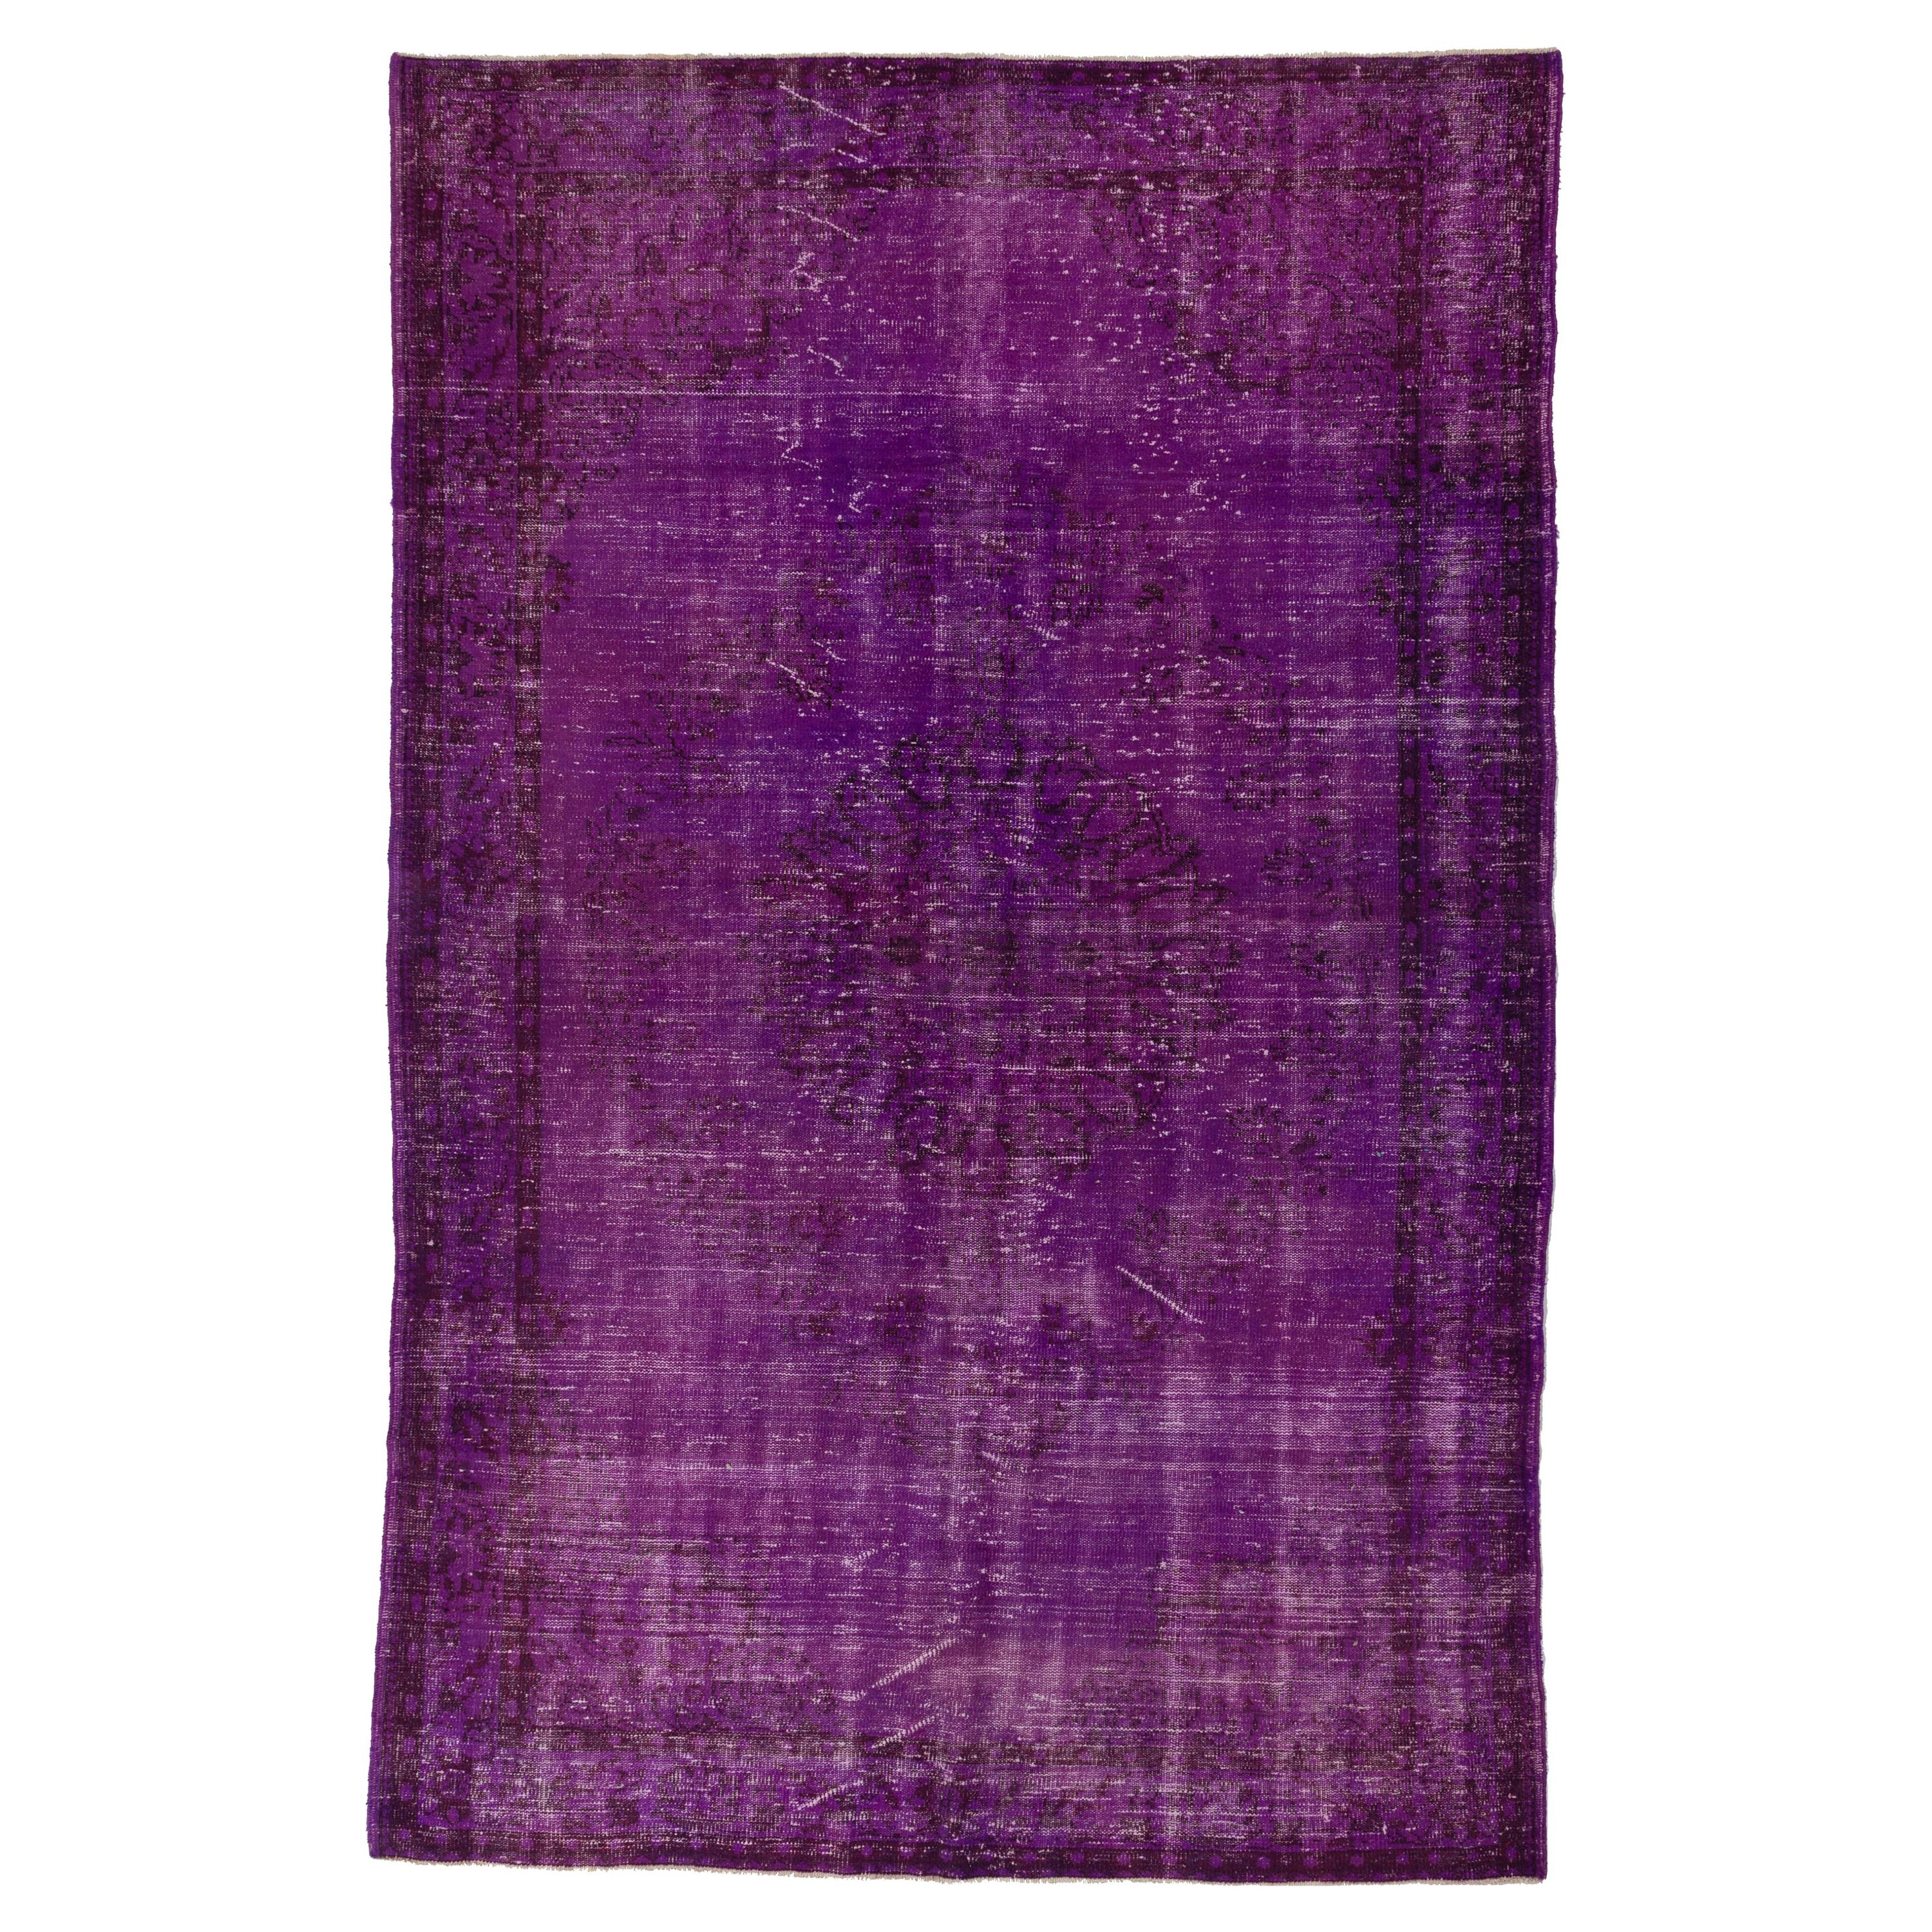 Tapis turc vintage surteint en violet pour intérieurs modernes, 16,51 x 25,4 cm en vente